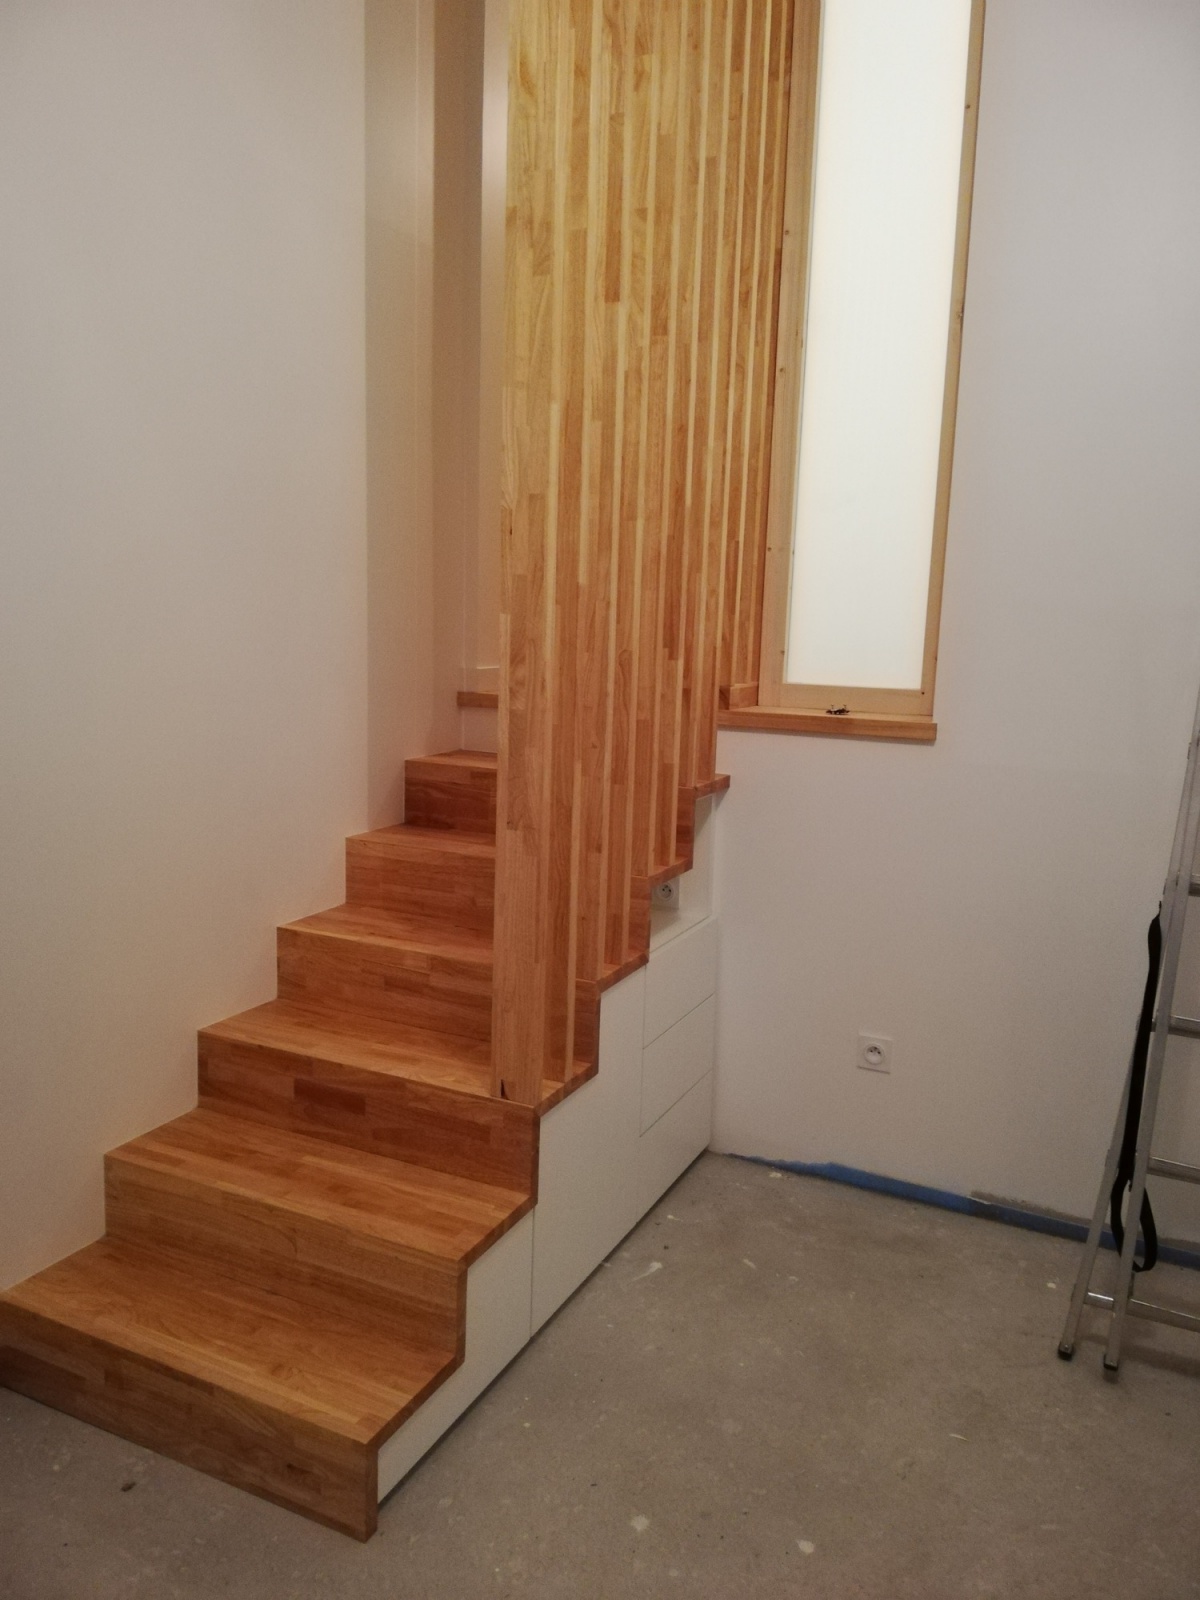 Conception d'un meuble escalier et rénovation intérieure : BD IMG_20181207_175152